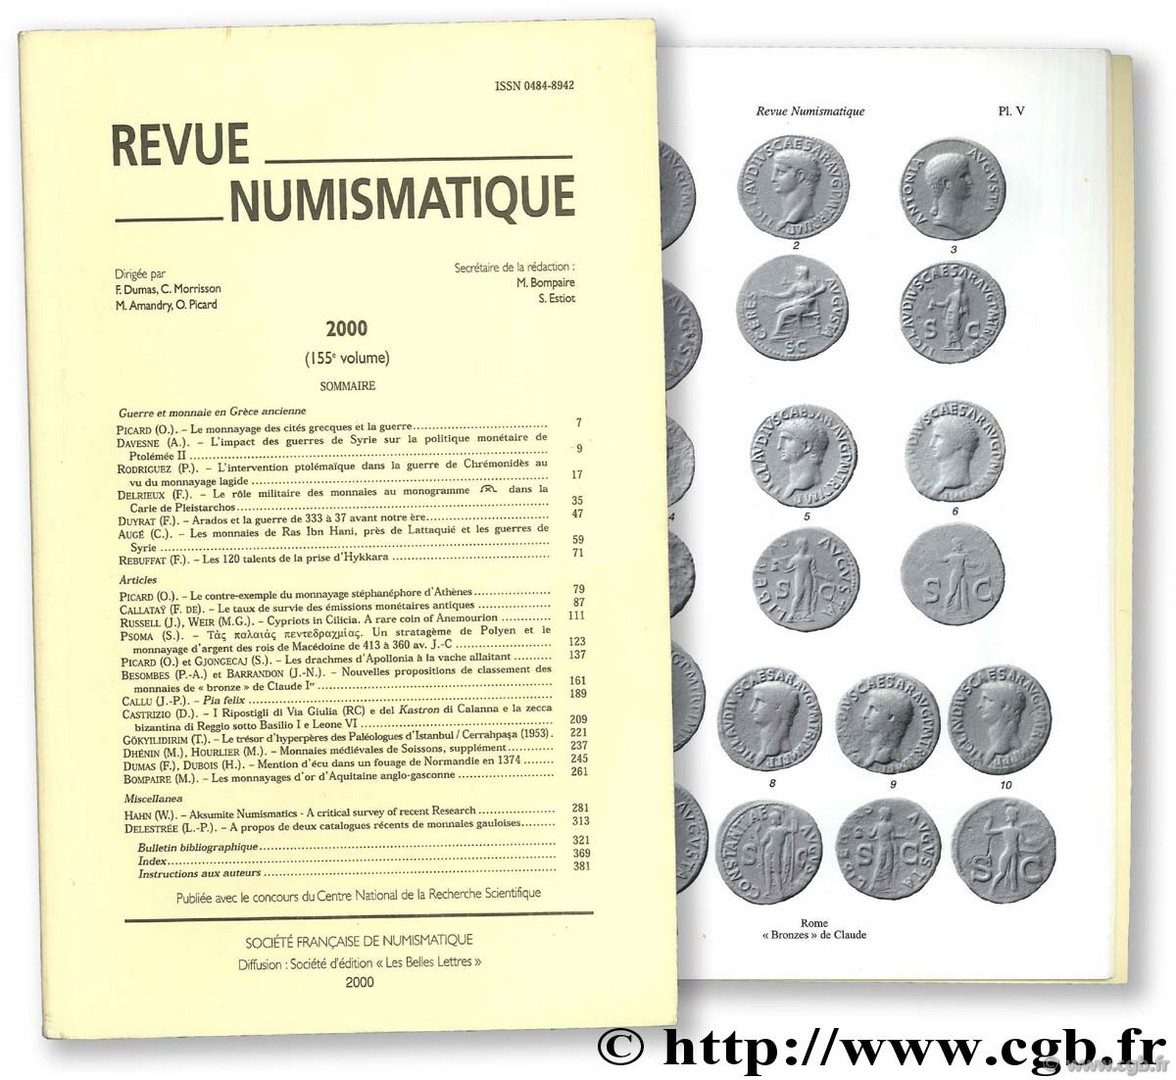 Revue Numismatique, 155ème volume Collectif